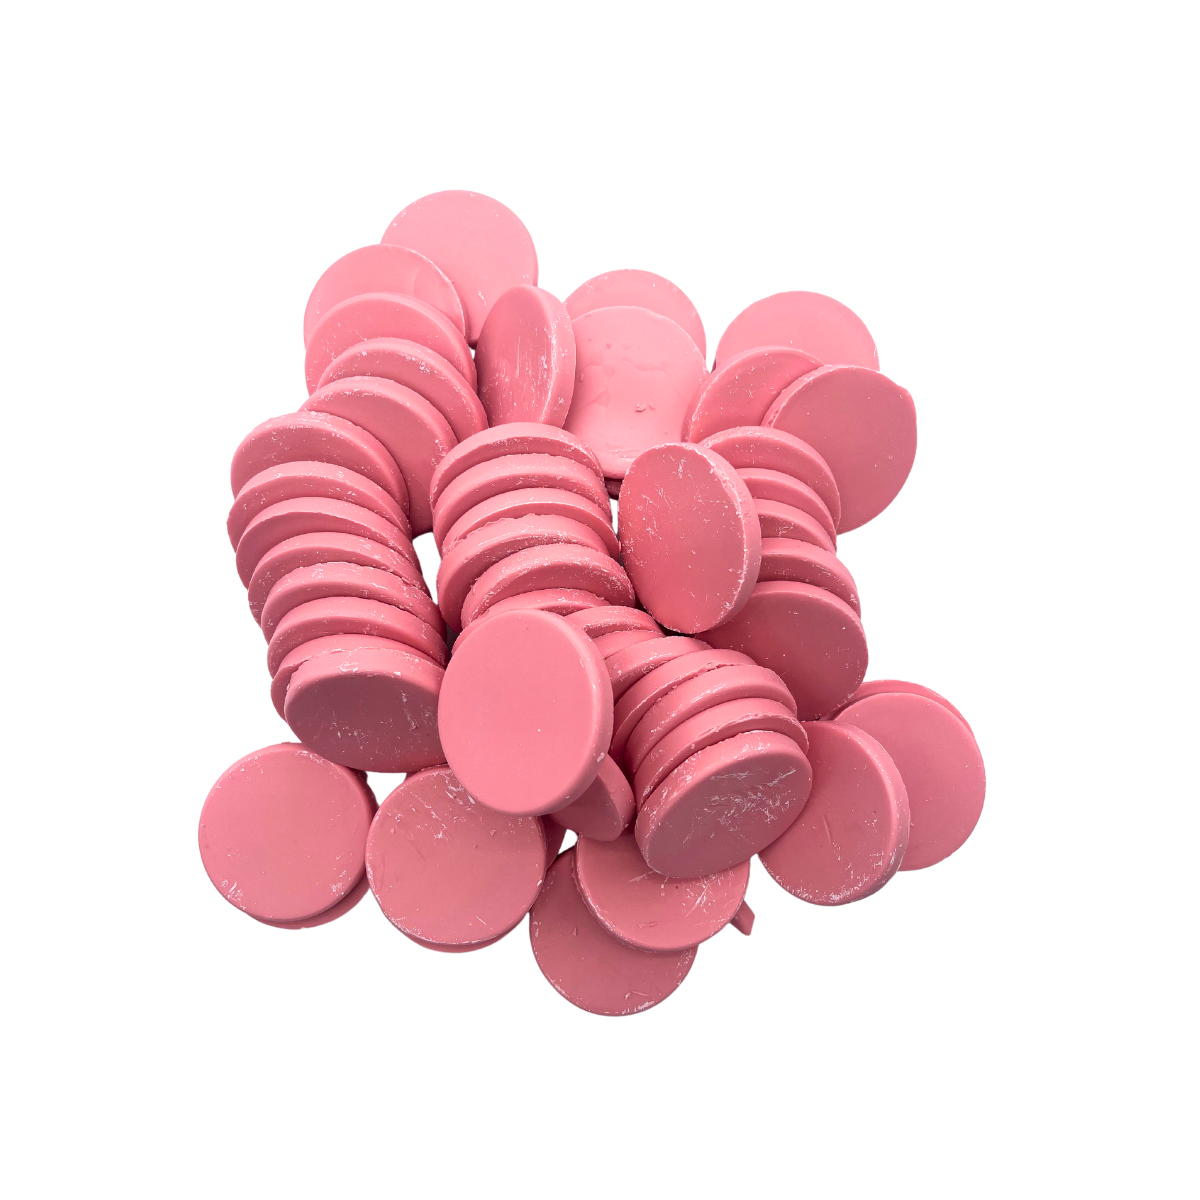 Depilcompany Hard Wax Pink – Cera dura profesional de alto rendimiento con ingredientes activos especiales – 2.2 lbs. (20 UND)